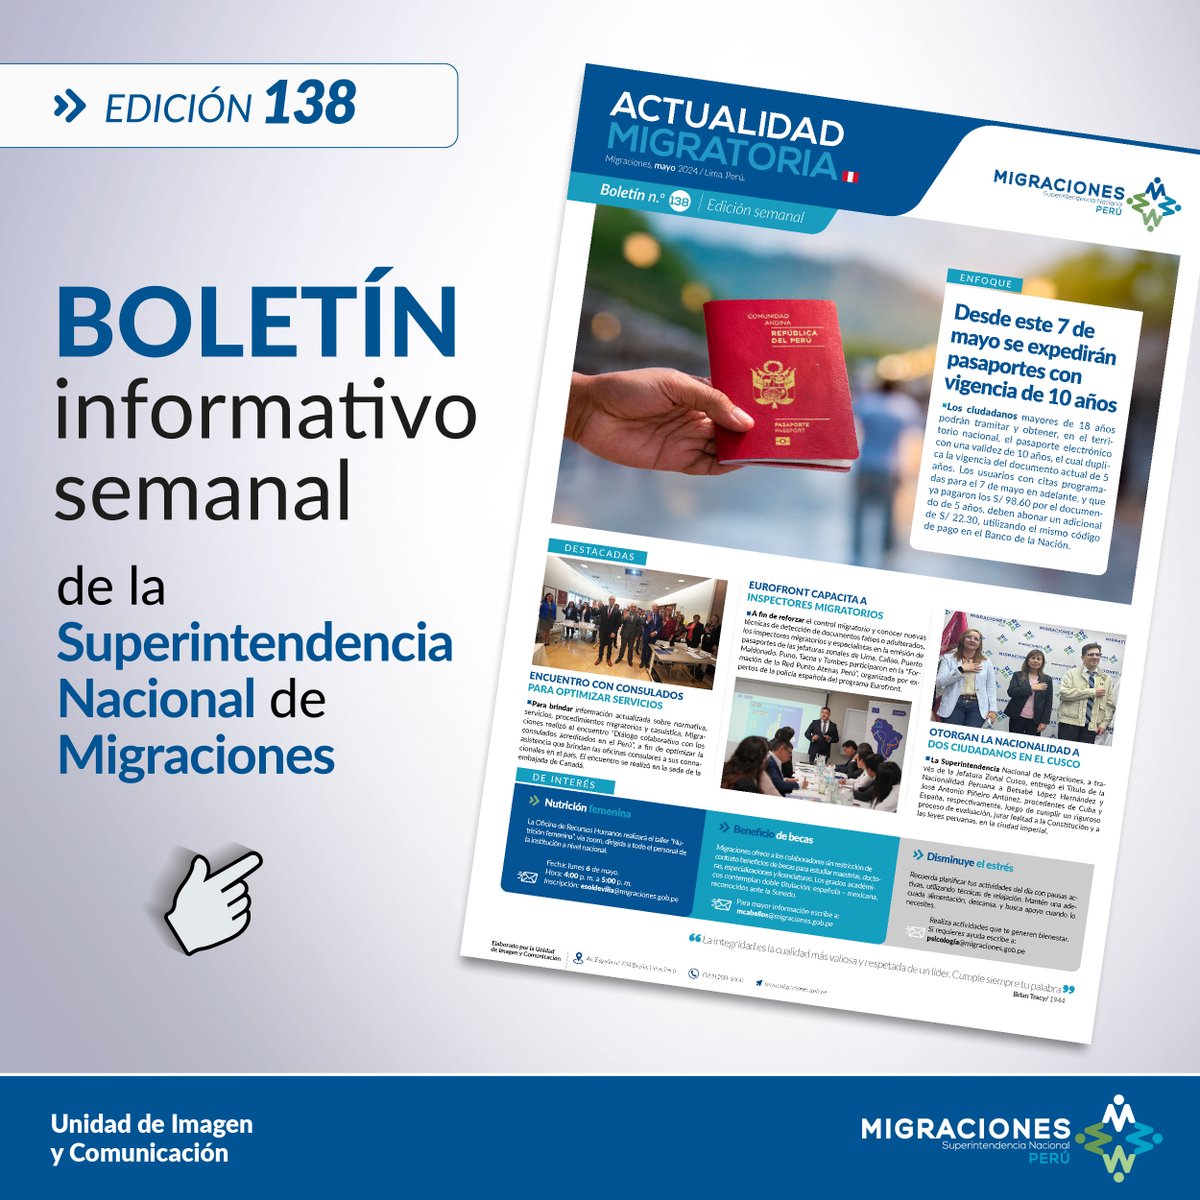 #BoletínInformativoSemanal 
📰 Actualidad Migratoria 📰 Edición 138
Entérate de las últimas noticias sobre #MigracionesPerú

✅ Descárgalo AQUÍ ➡ gob.pe/es/i/5526277